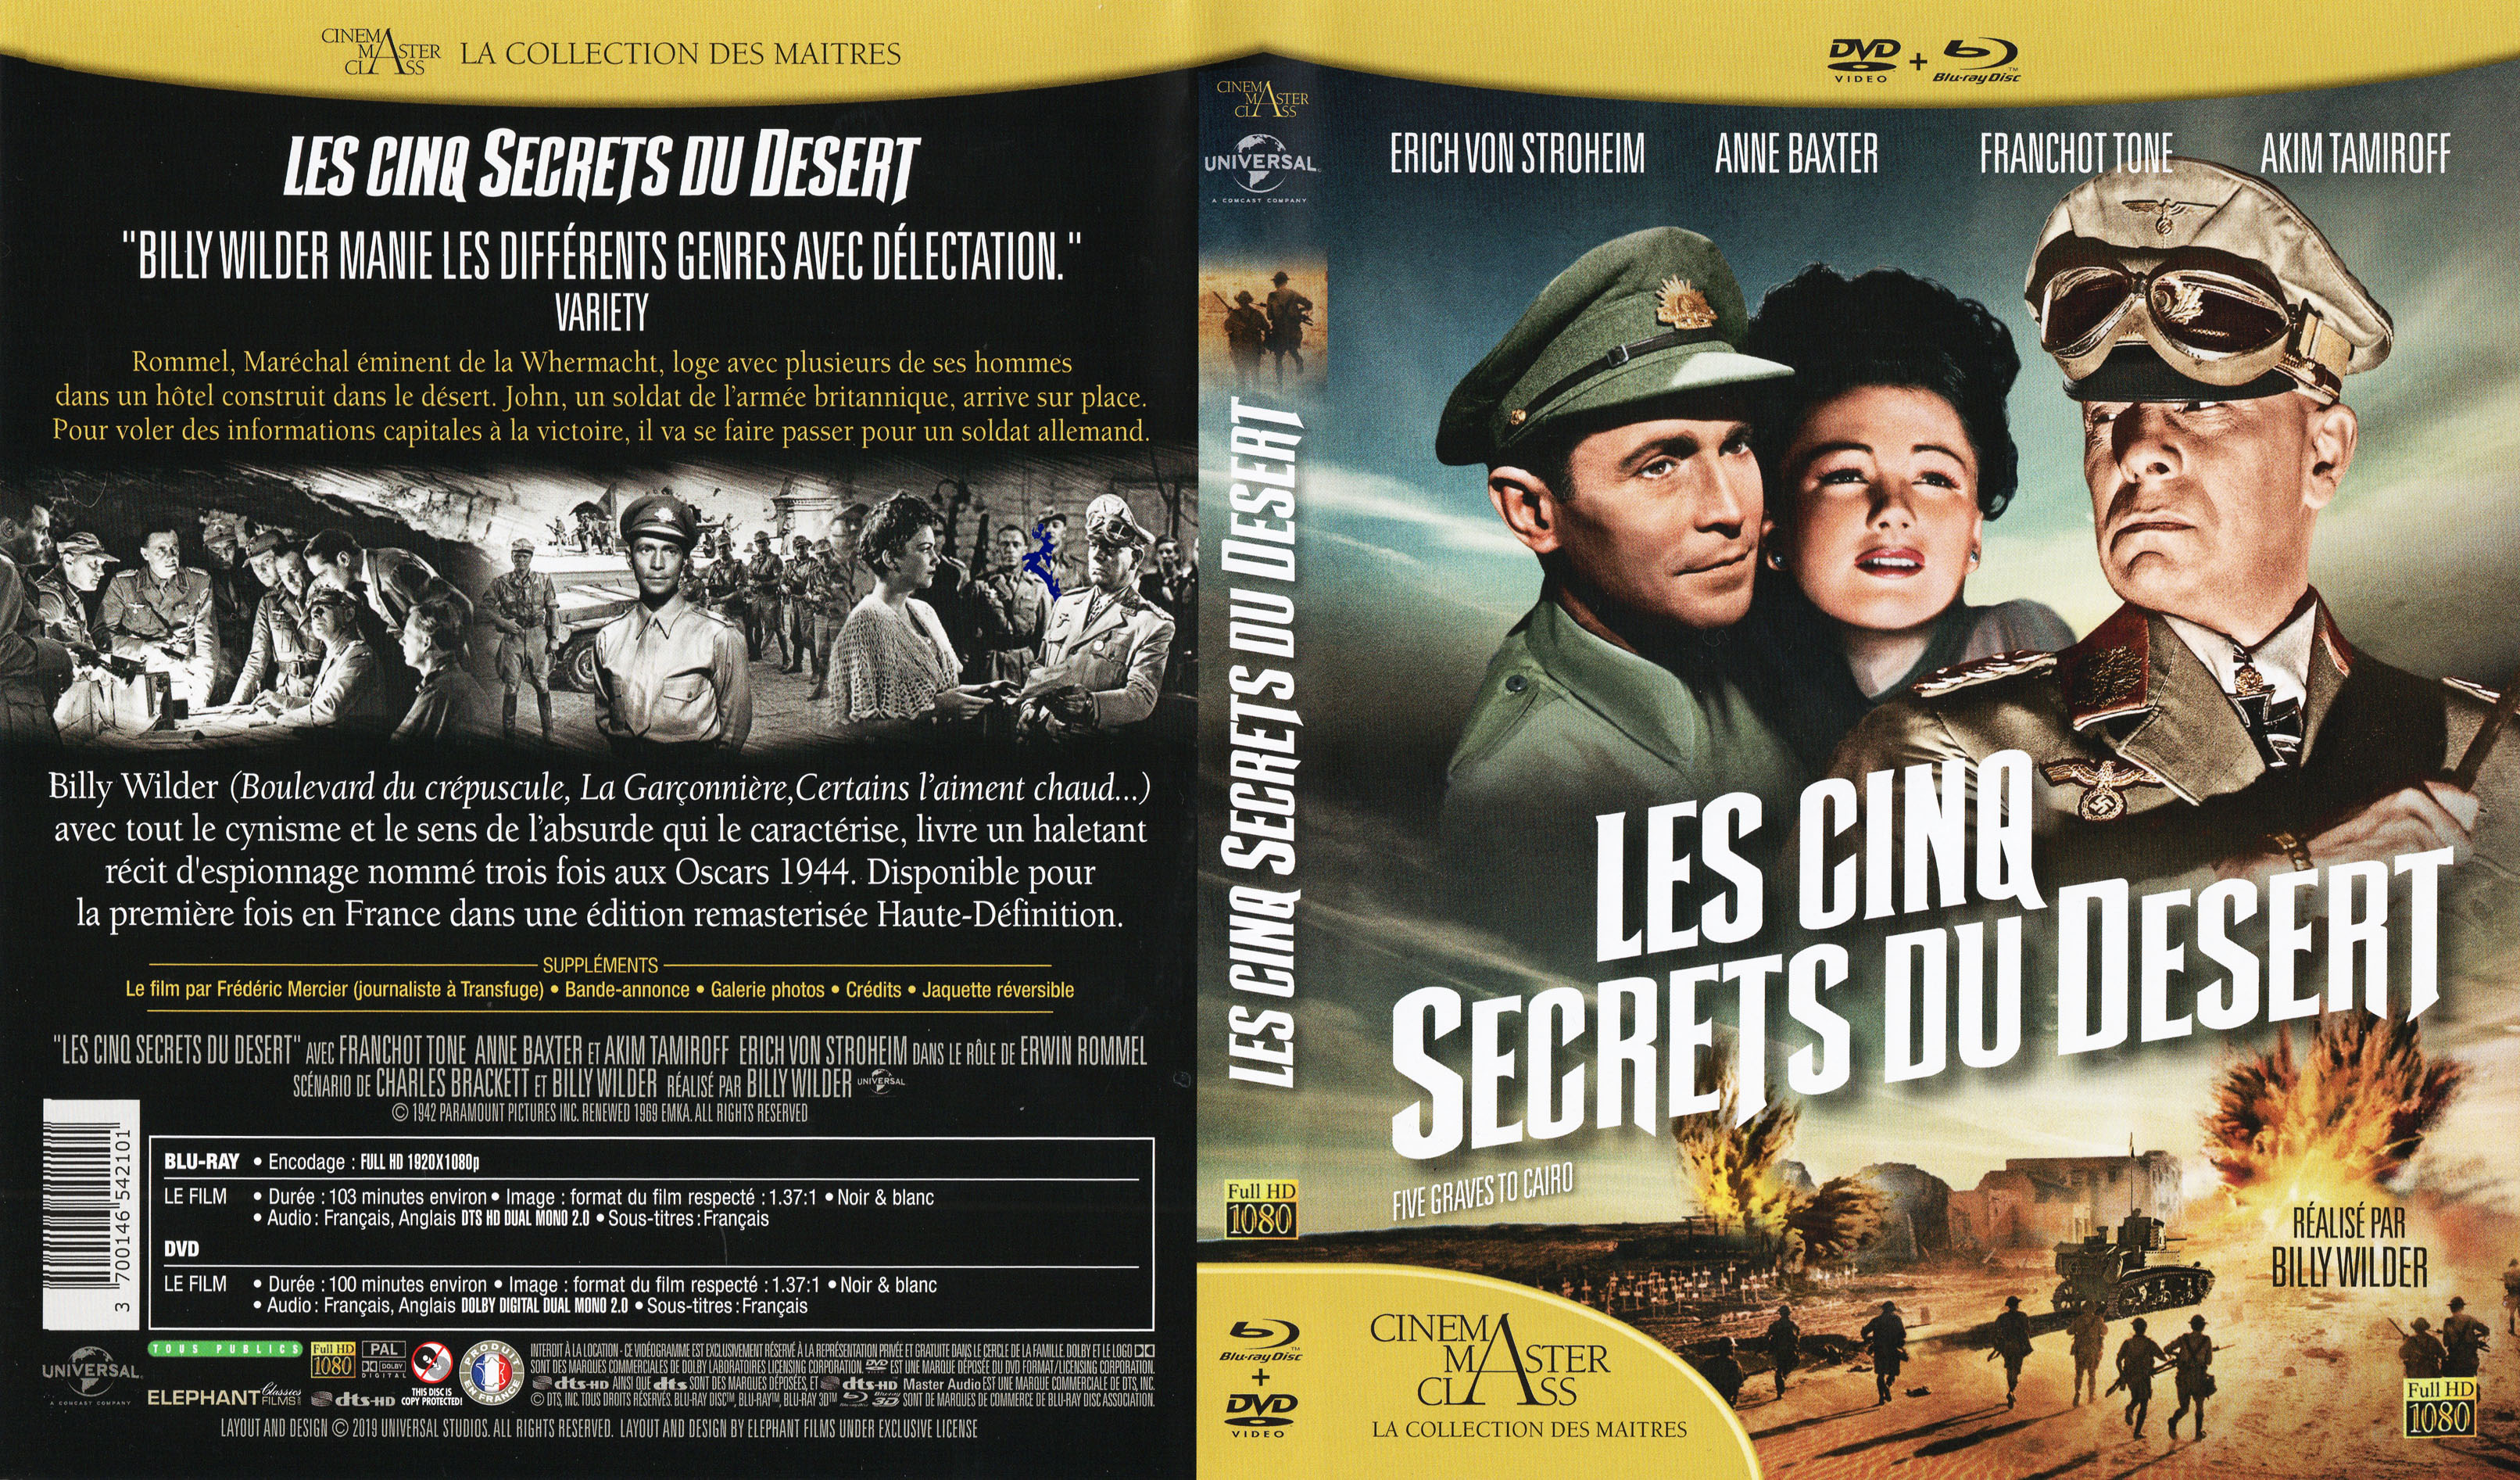 Jaquette DVD Les cinq secrets du desert (BLU-RAY)